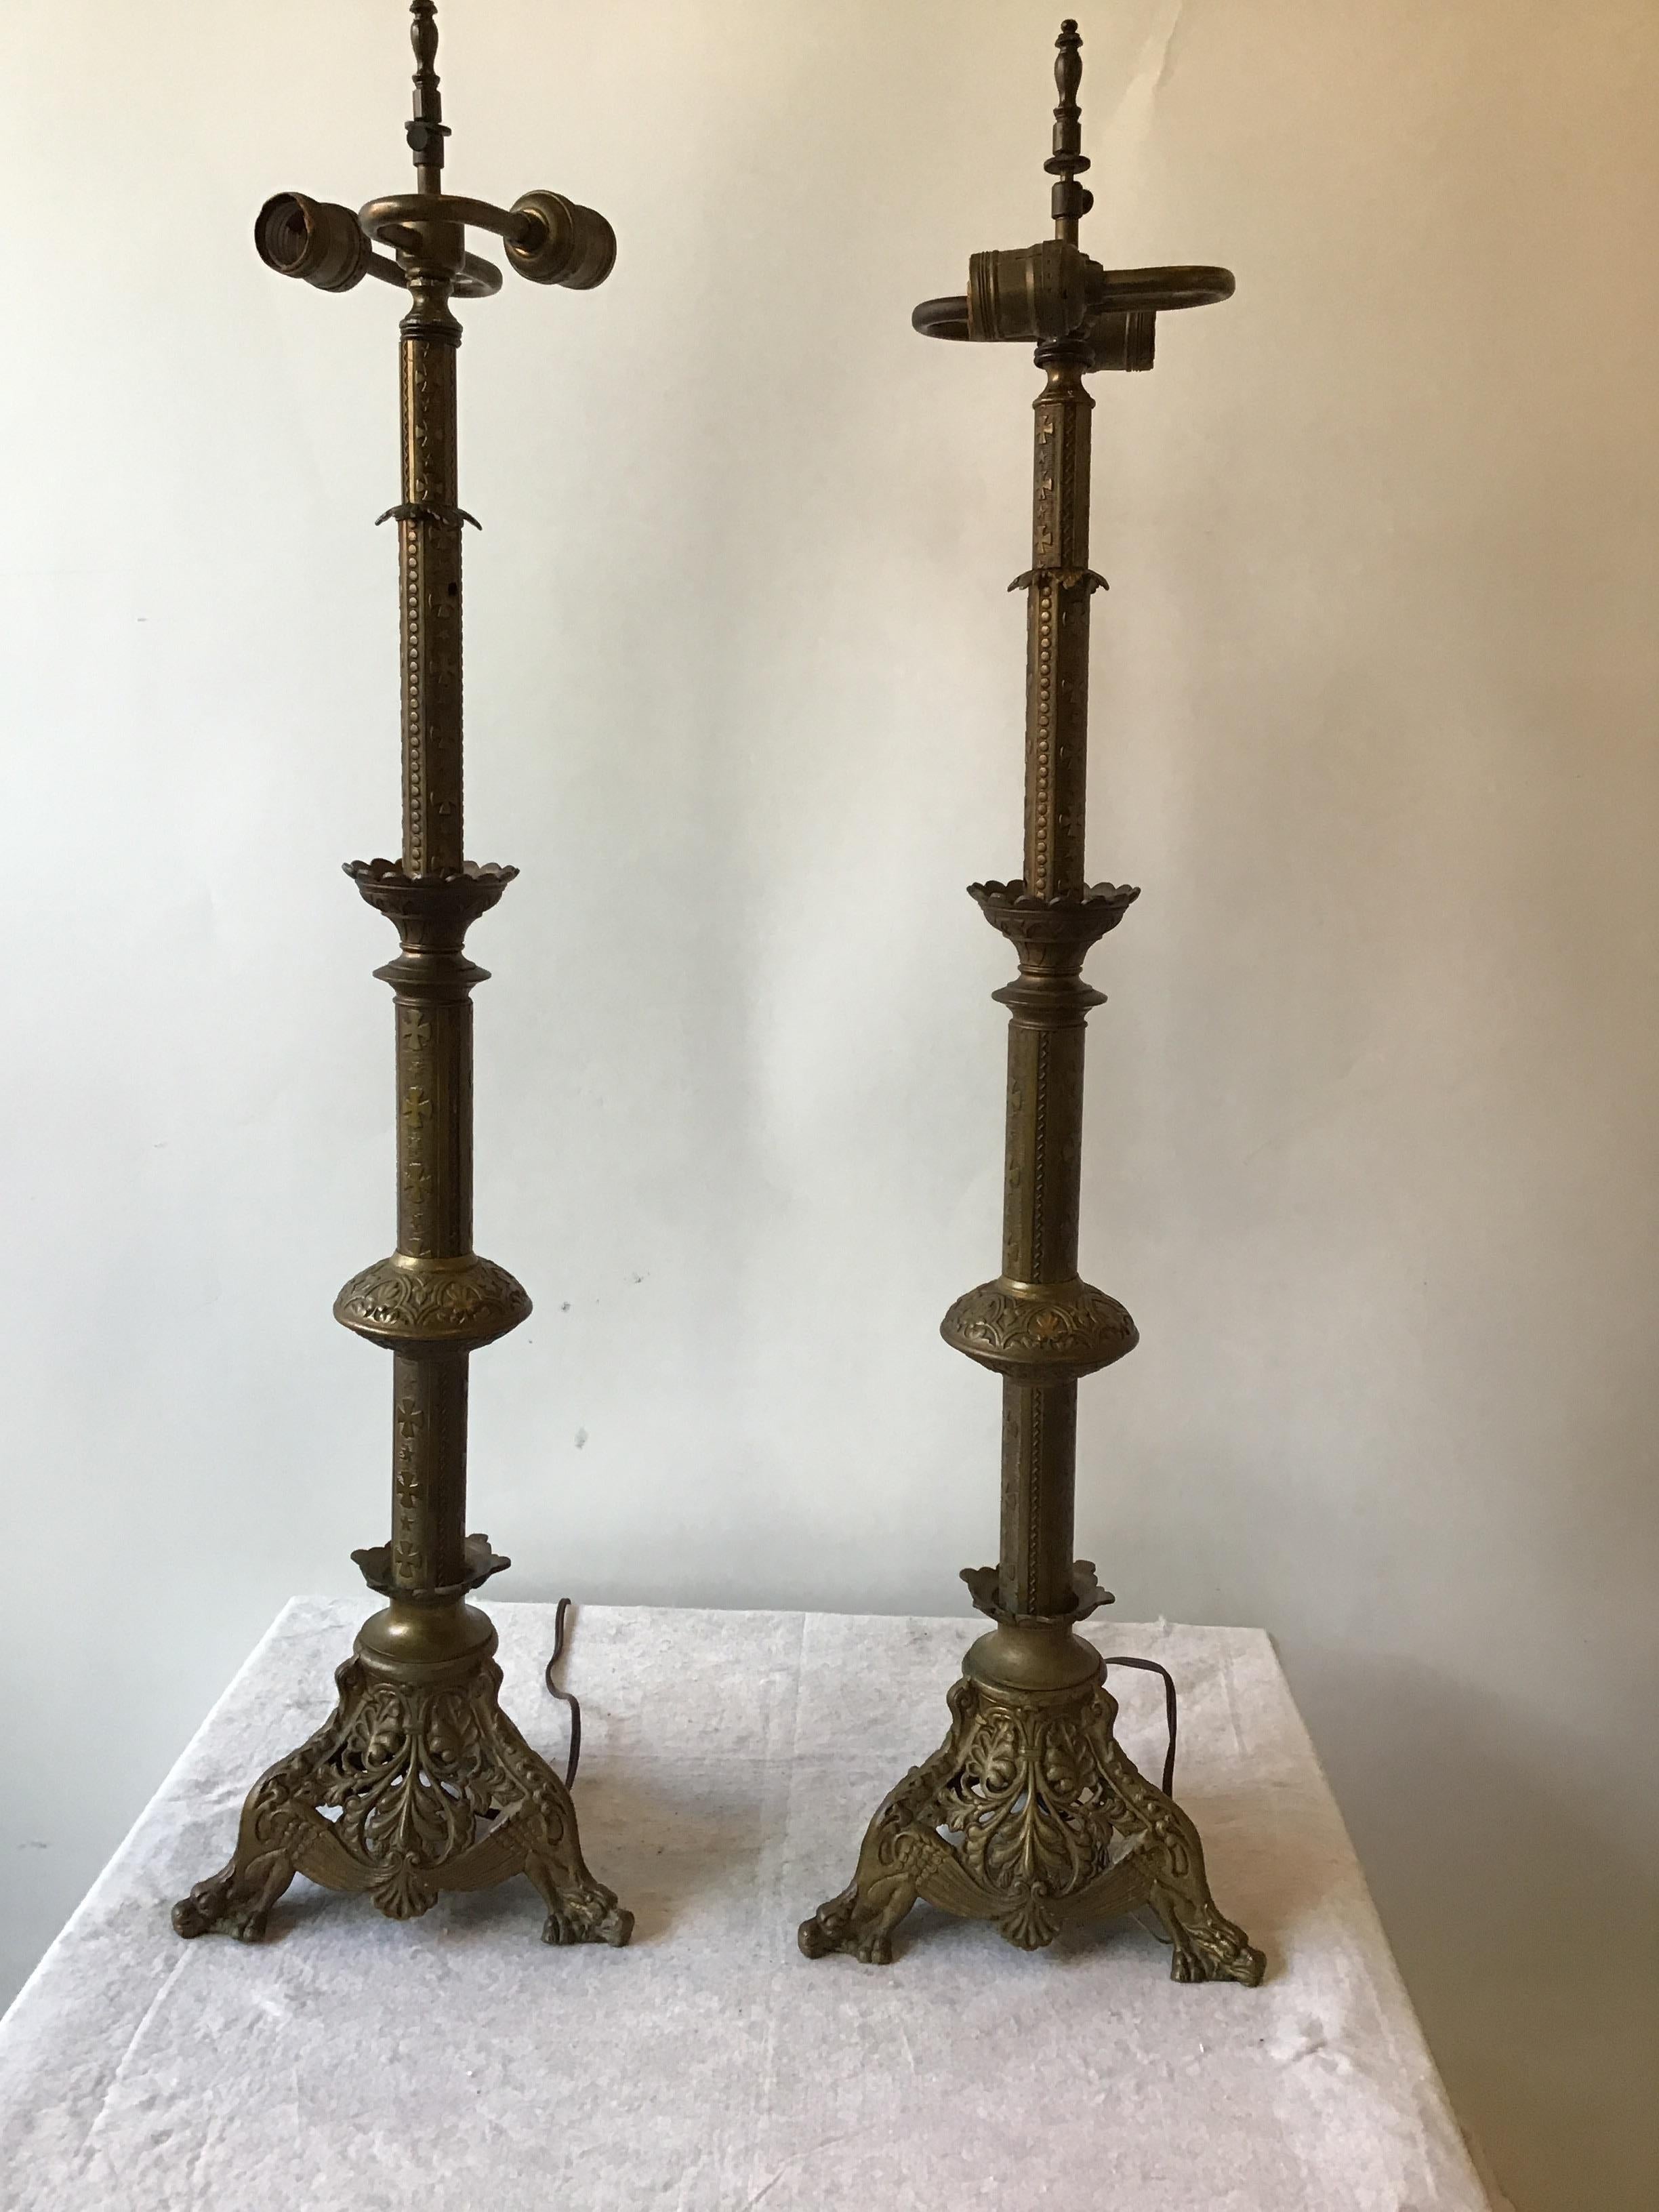 1920s brass church candlestick lamps.